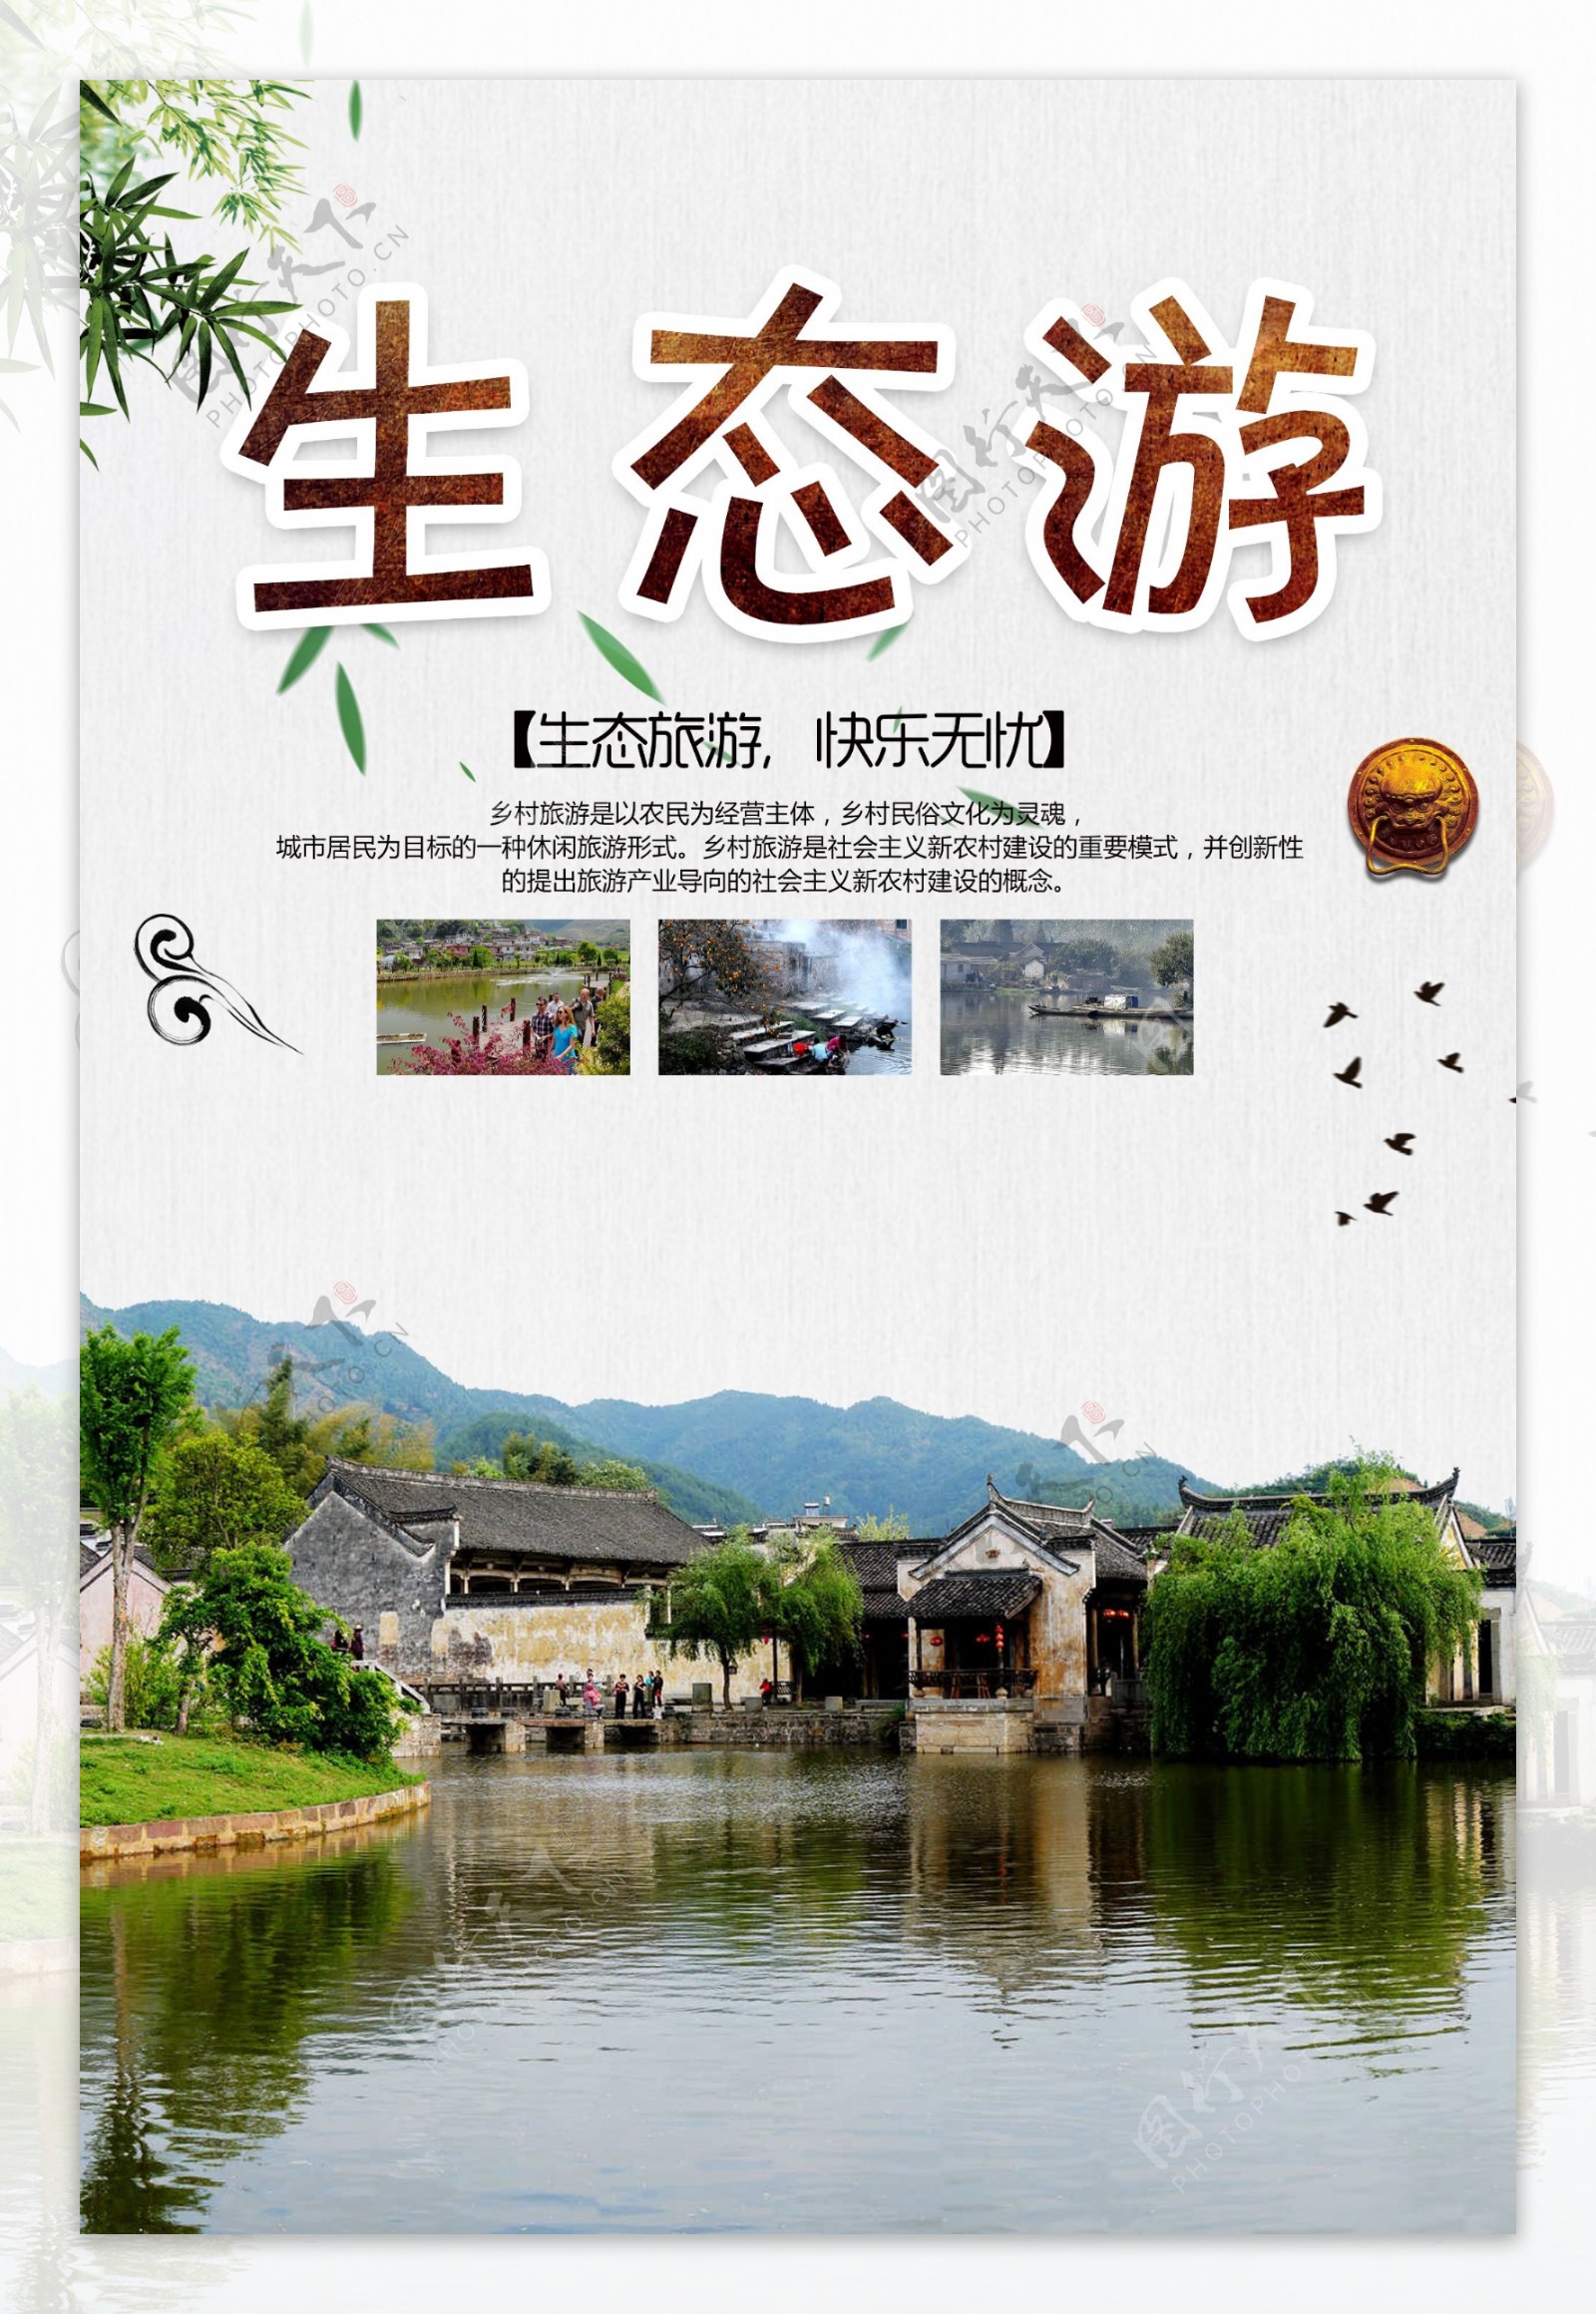 生态游广告推广旅游宣传海报